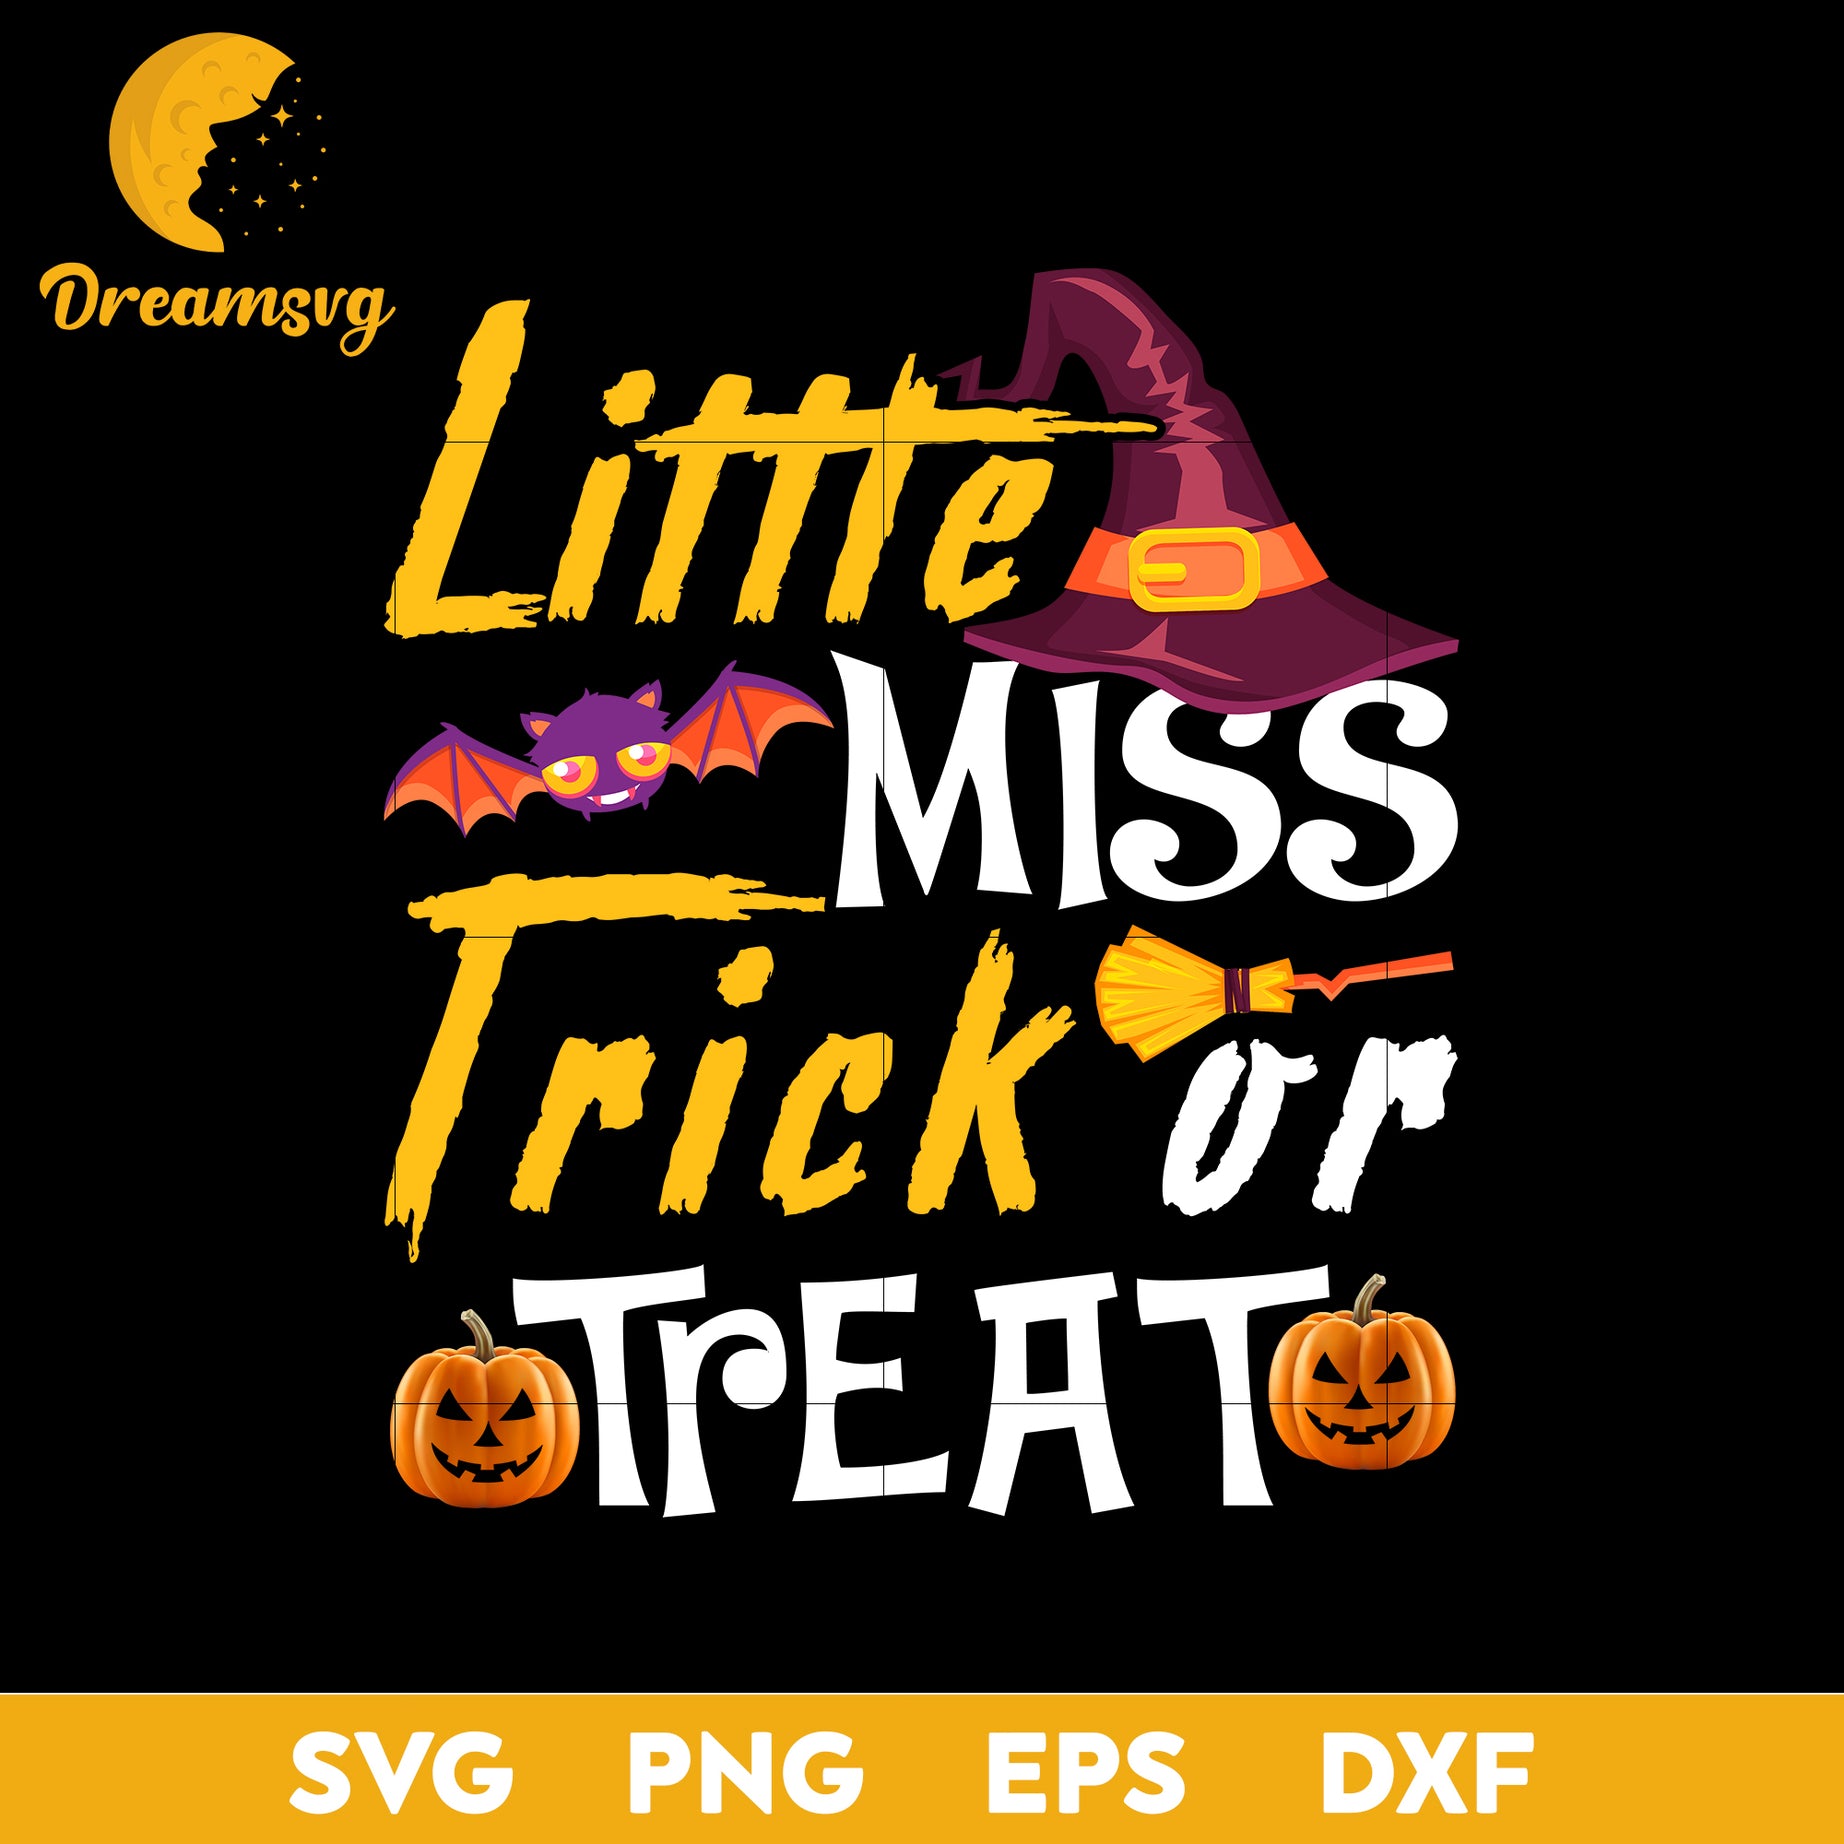 Littte miss frich or treat svg, Halloween svg, png, dxf, eps digital file.